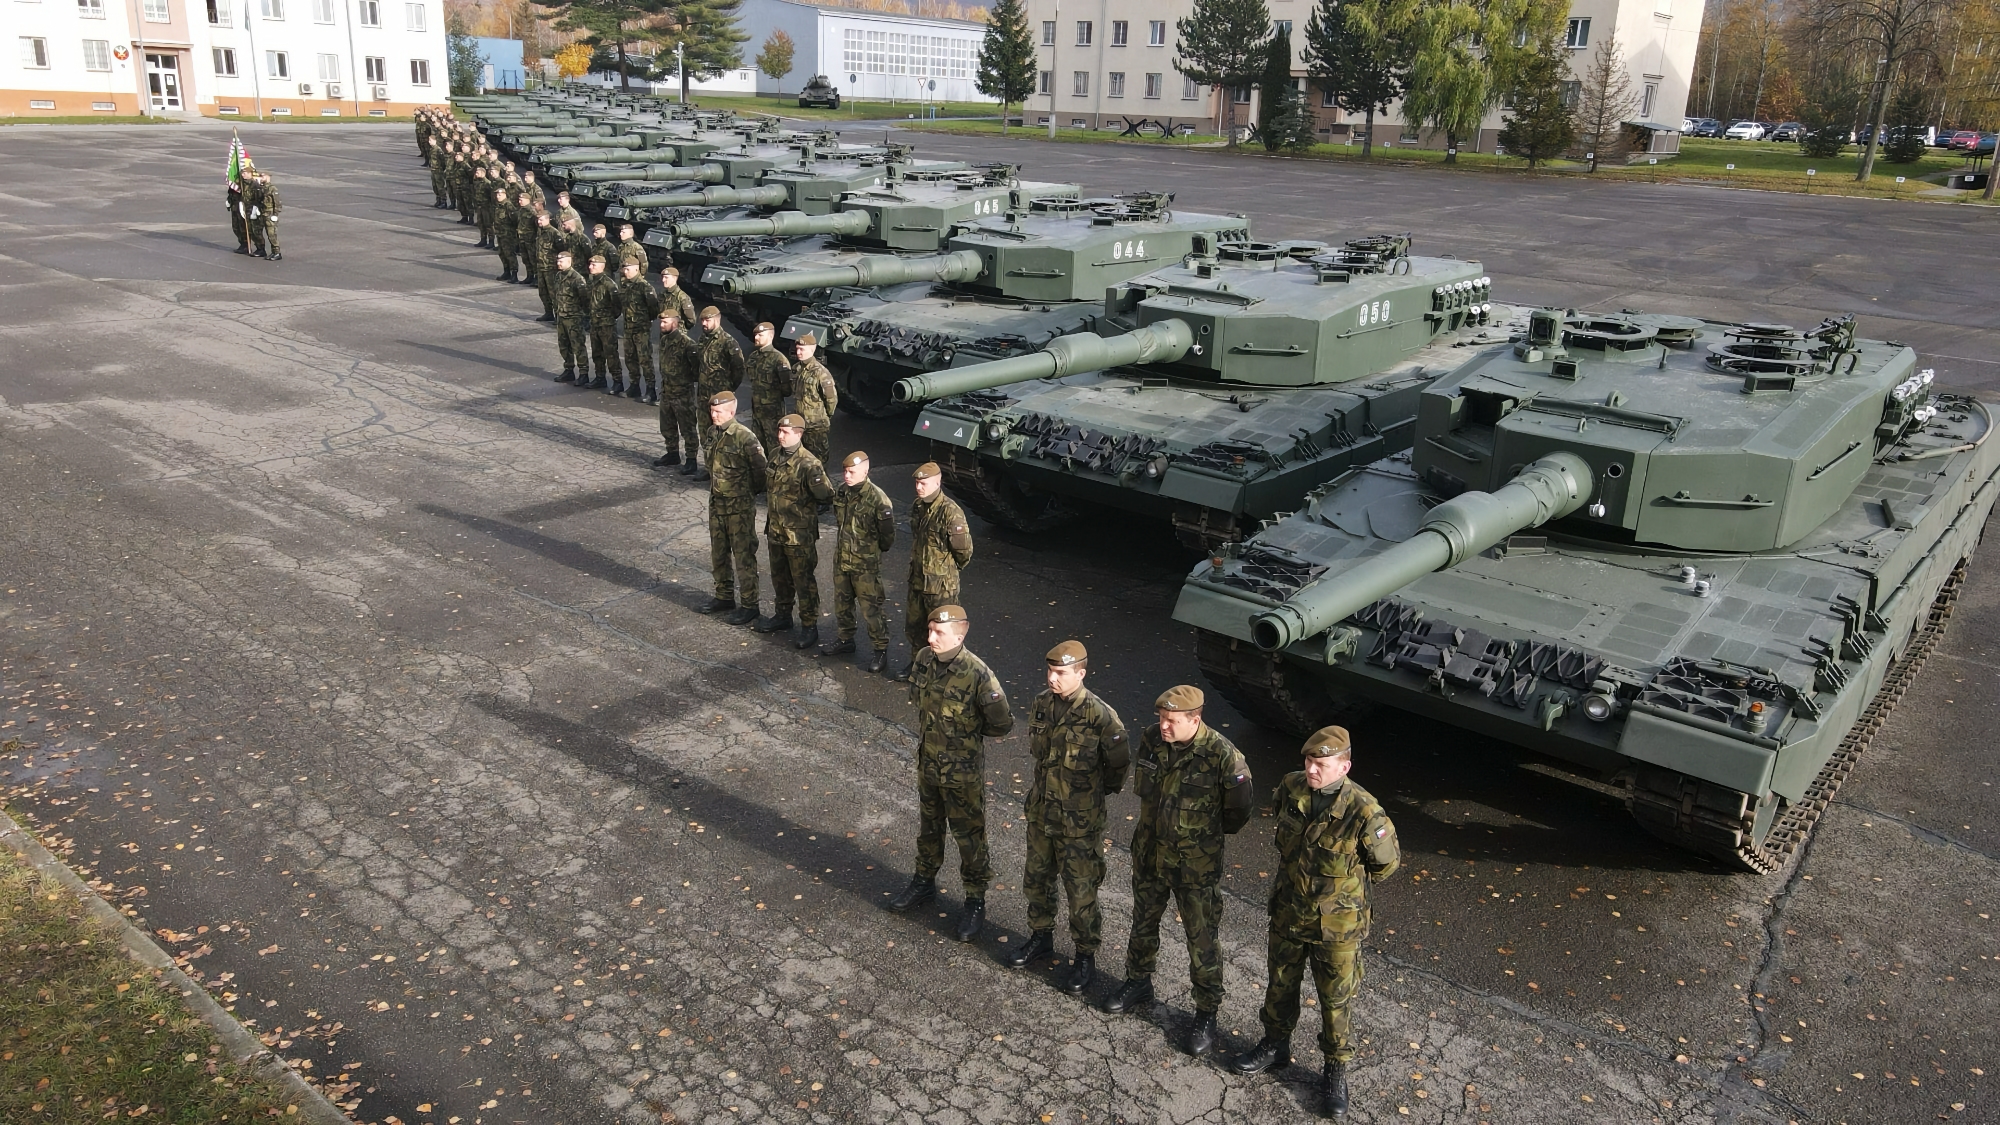 Deutschland wird ein weiteres Los von Leopard 2A4-Panzern an die Tschechische Republik liefern